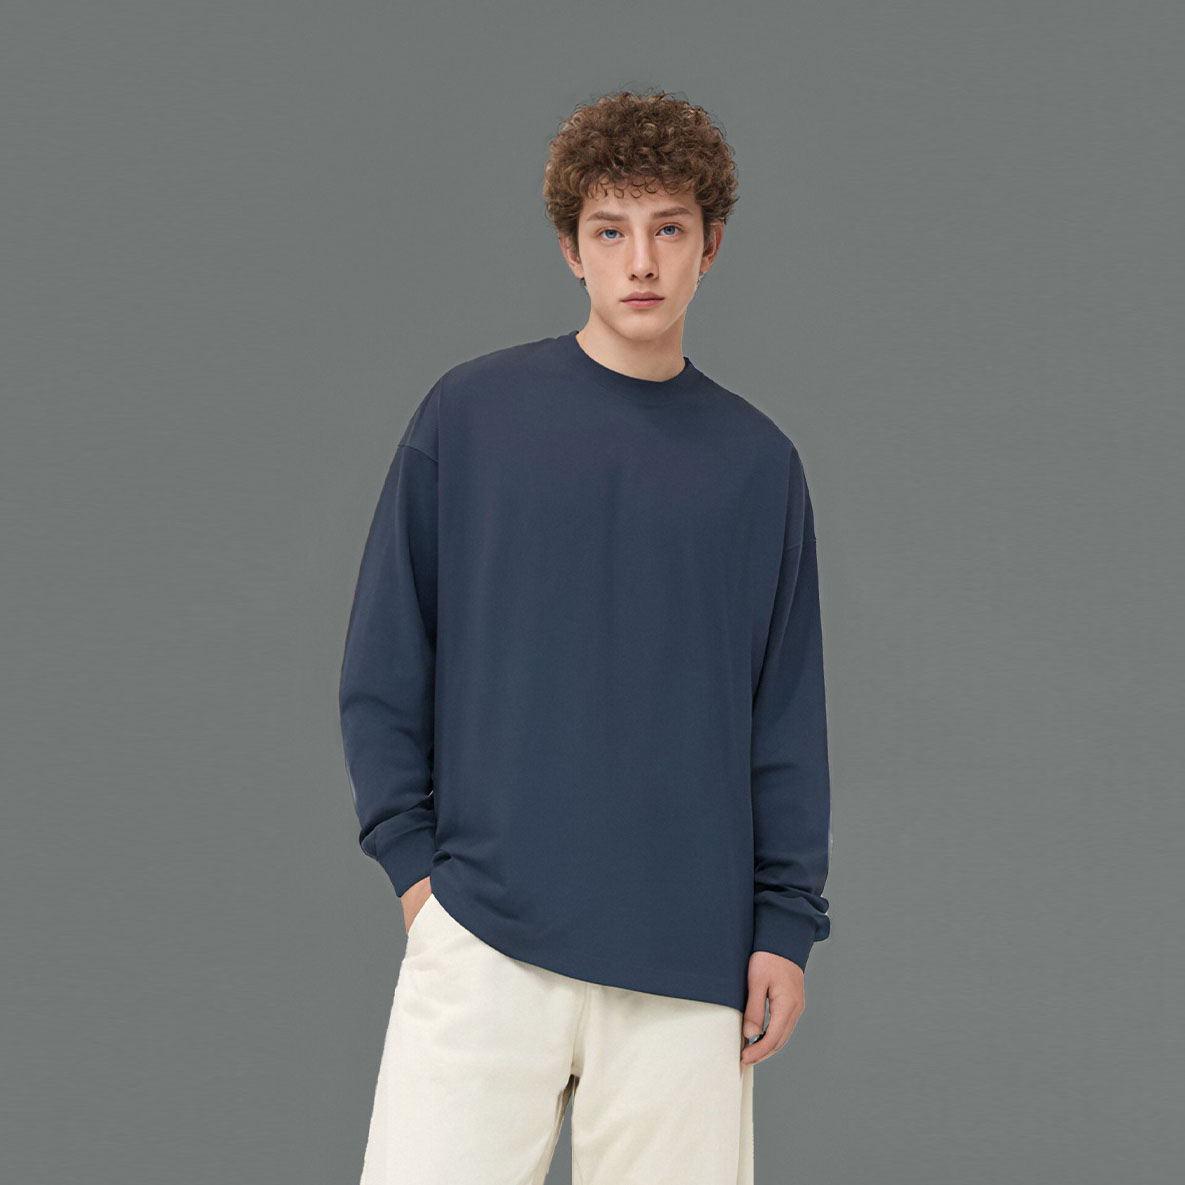 Tech fabric long sleeve unisex t shirt 丨 Lezhou Garment